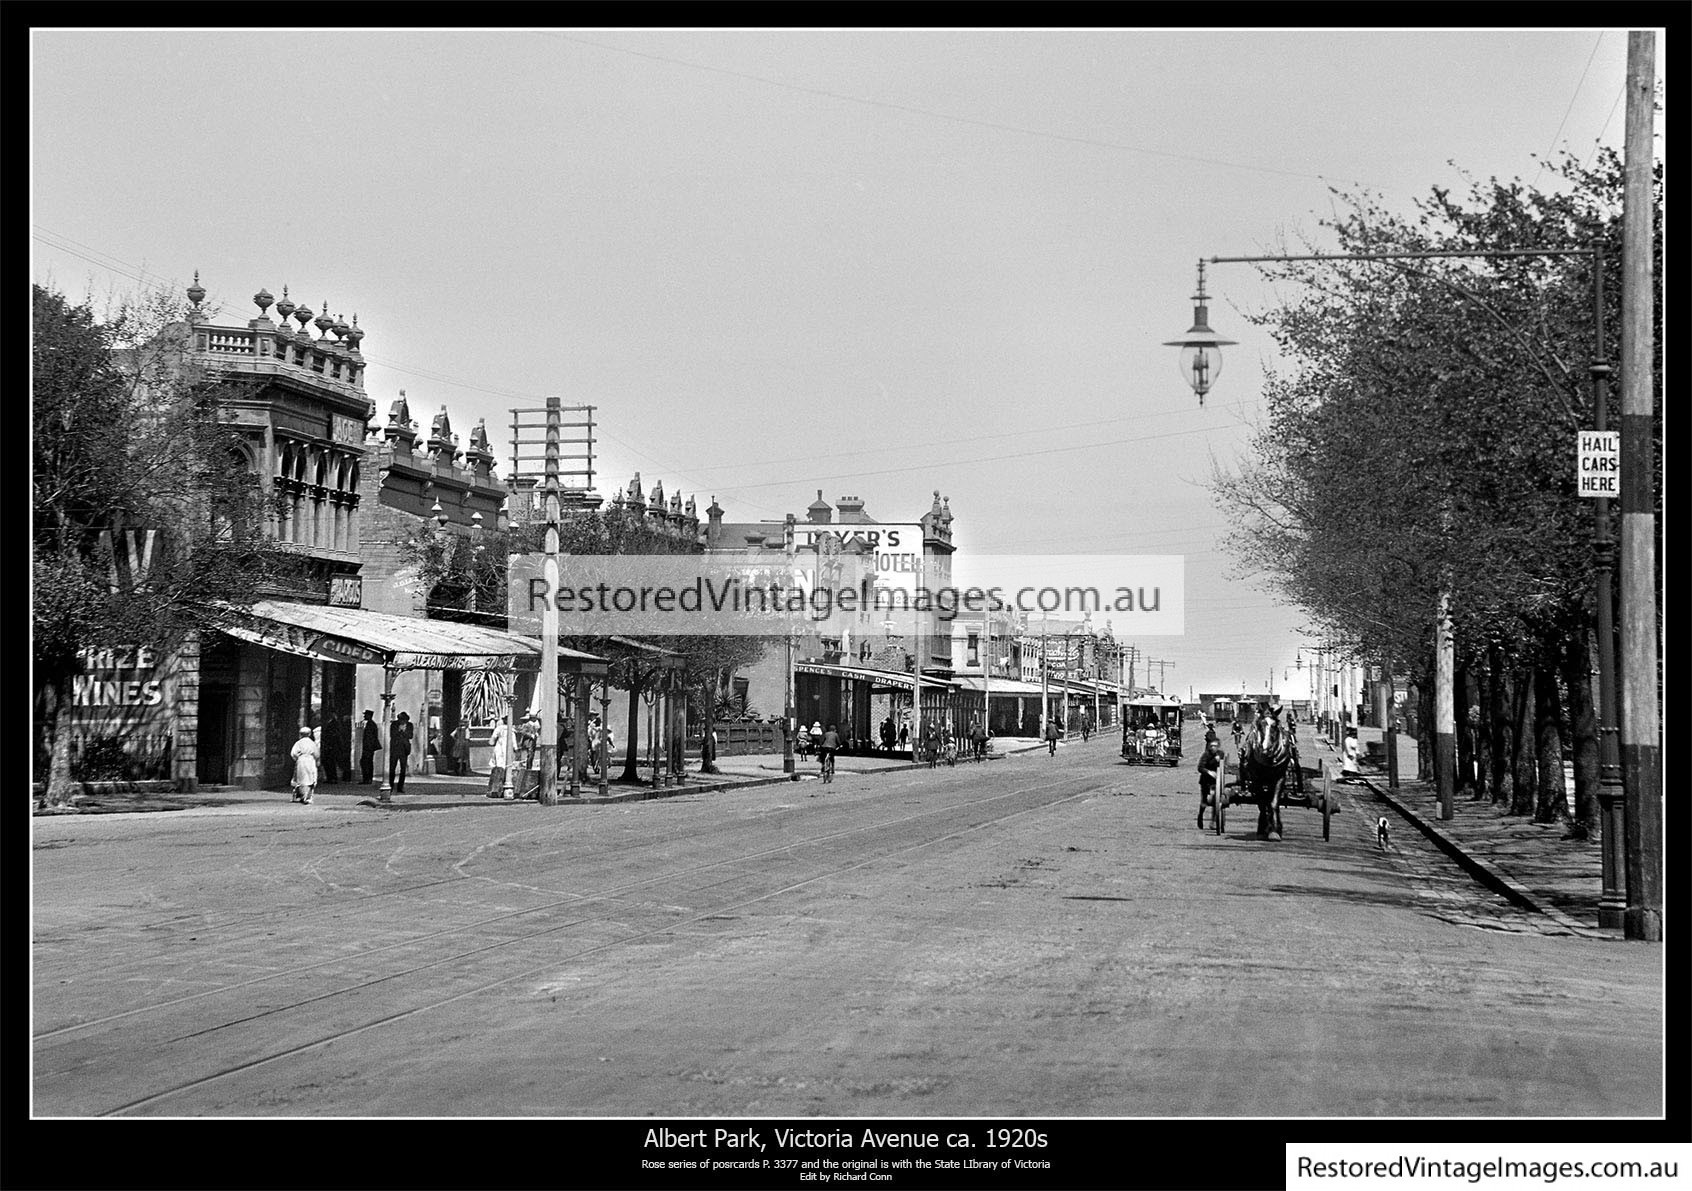 Albert Park Victoria Avenue 1920s